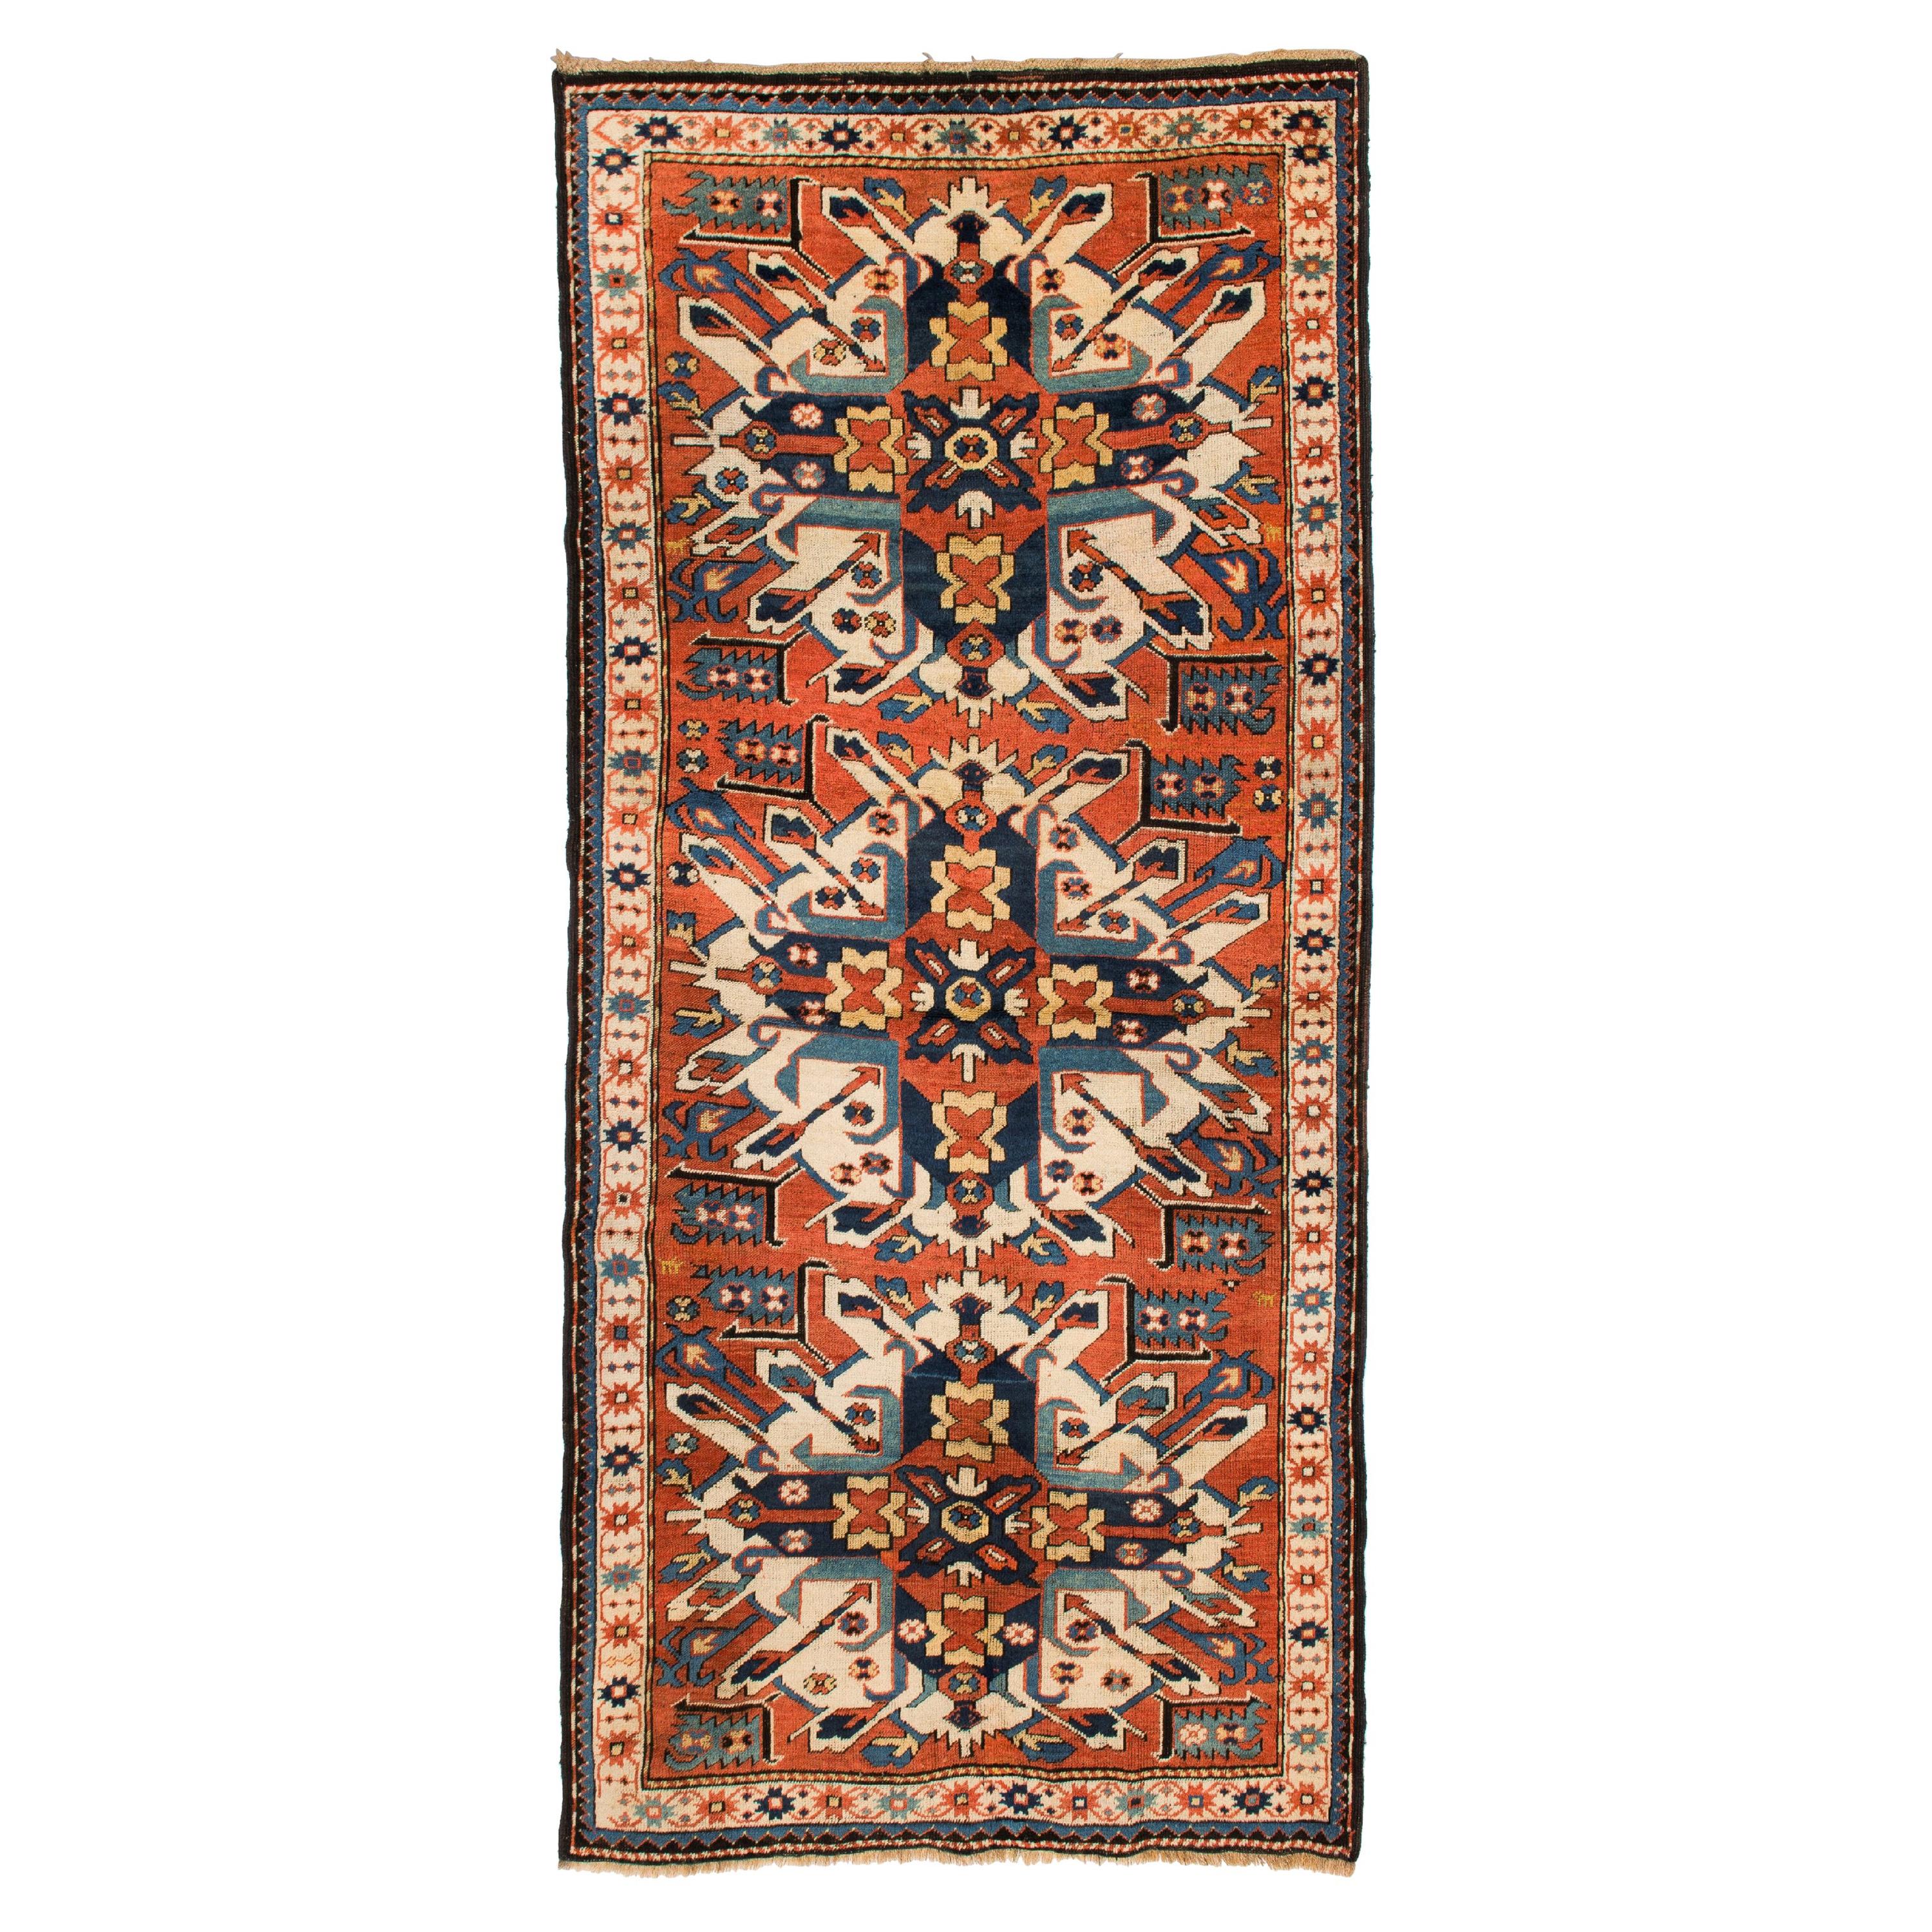 4.2x8.7 Ft Antiker so genannter Sunburst oder Eagle Kazak Teppich aus Karabakh. Um 1875